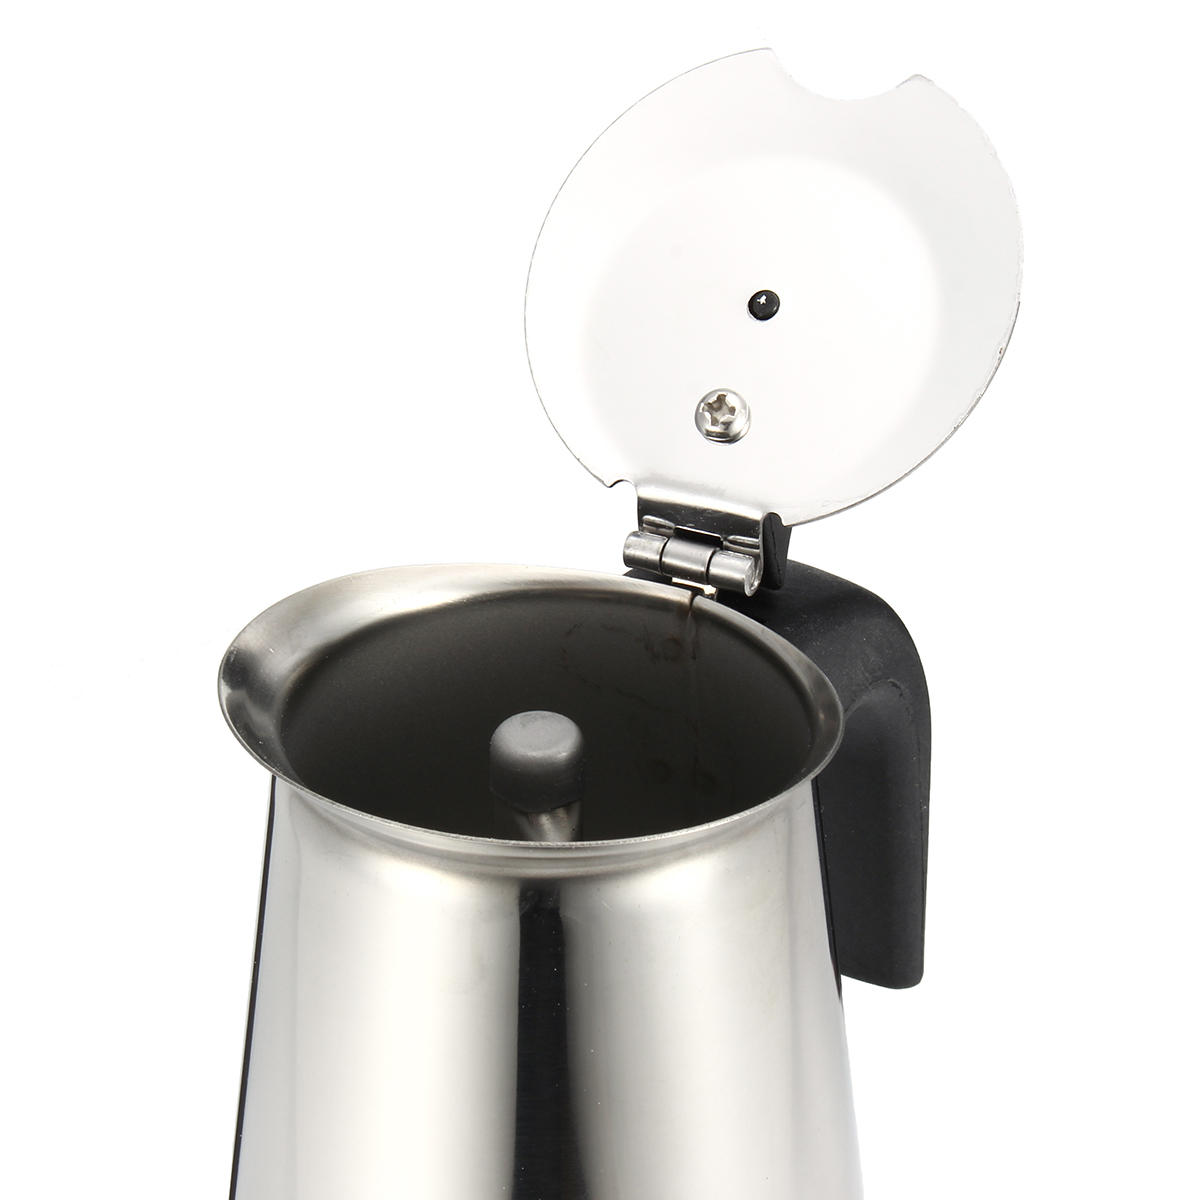 エスプレッソモカコーヒーメーカーポットパーコレーターステンレス製電気ストーブ電気コーヒーケトル